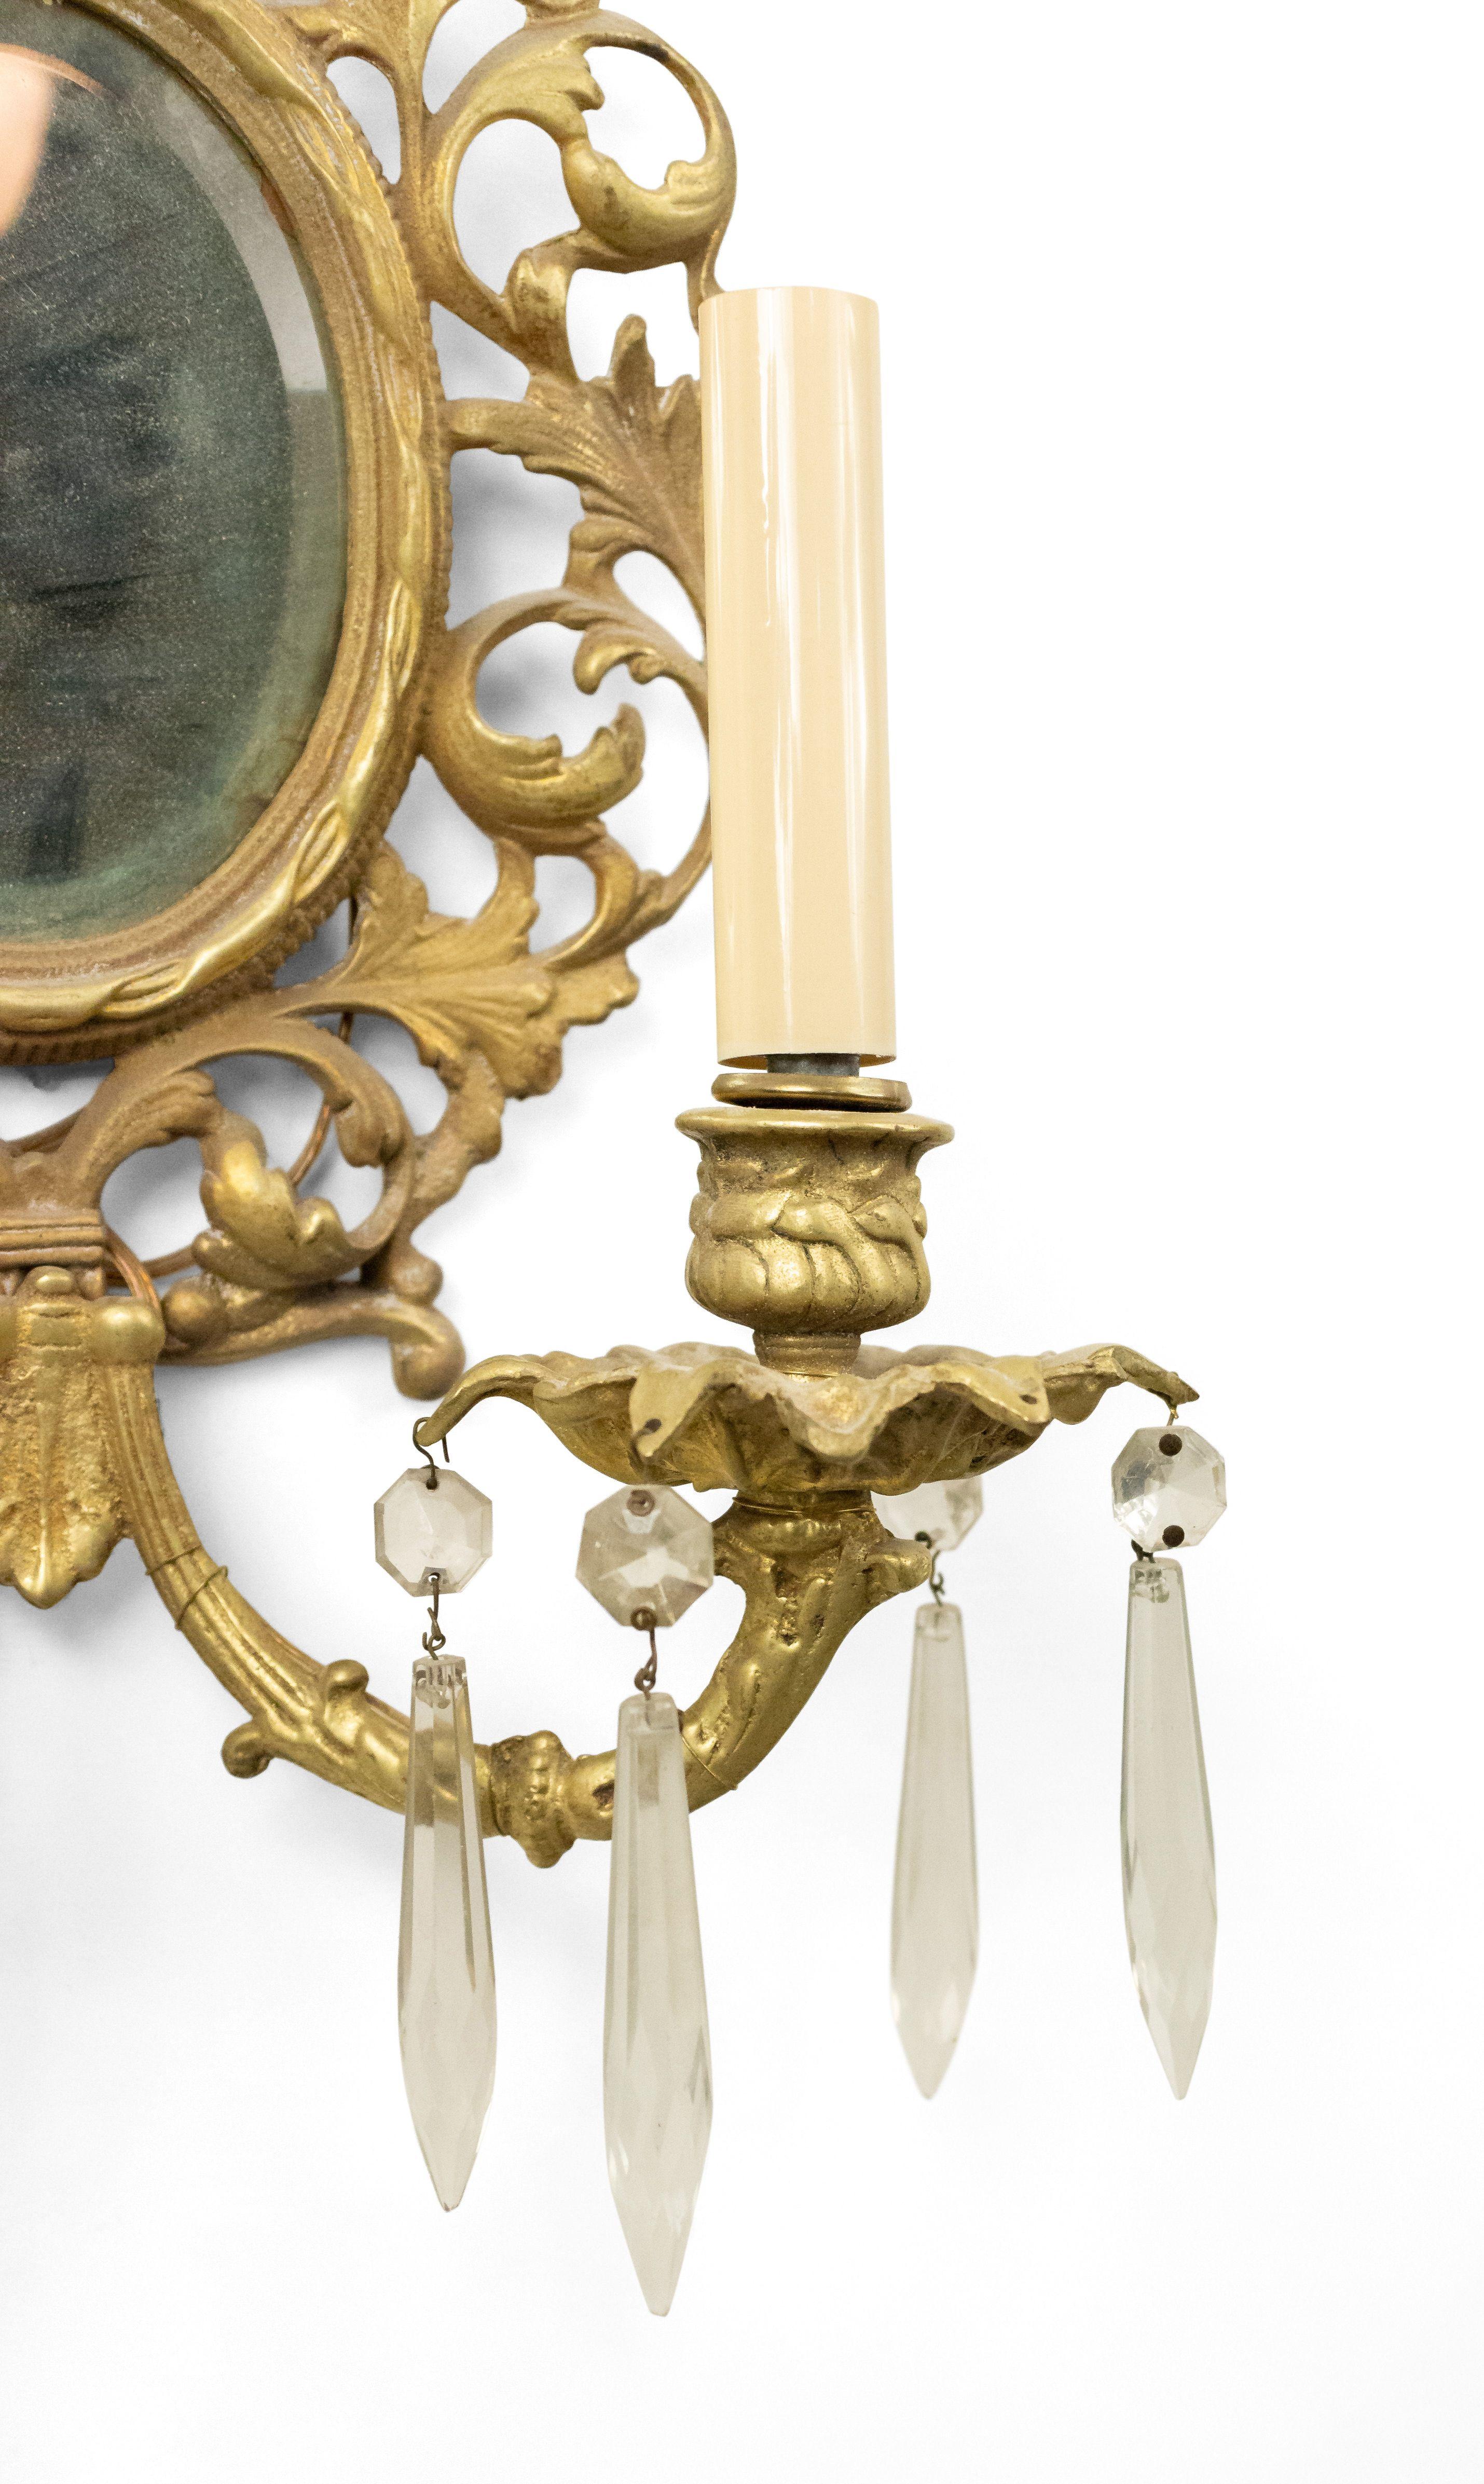 Französisch viktorianischen 20. Jahrhundert 2 Licht Leuchte in vergoldeter Bronze mit scrollenden blattförmigen Armen aus einer filigranen ovalen Rückseite mit einem abgeschrägten Spiegel-Einsatz (markiert Glo-Mar Artworks, NY) aus.